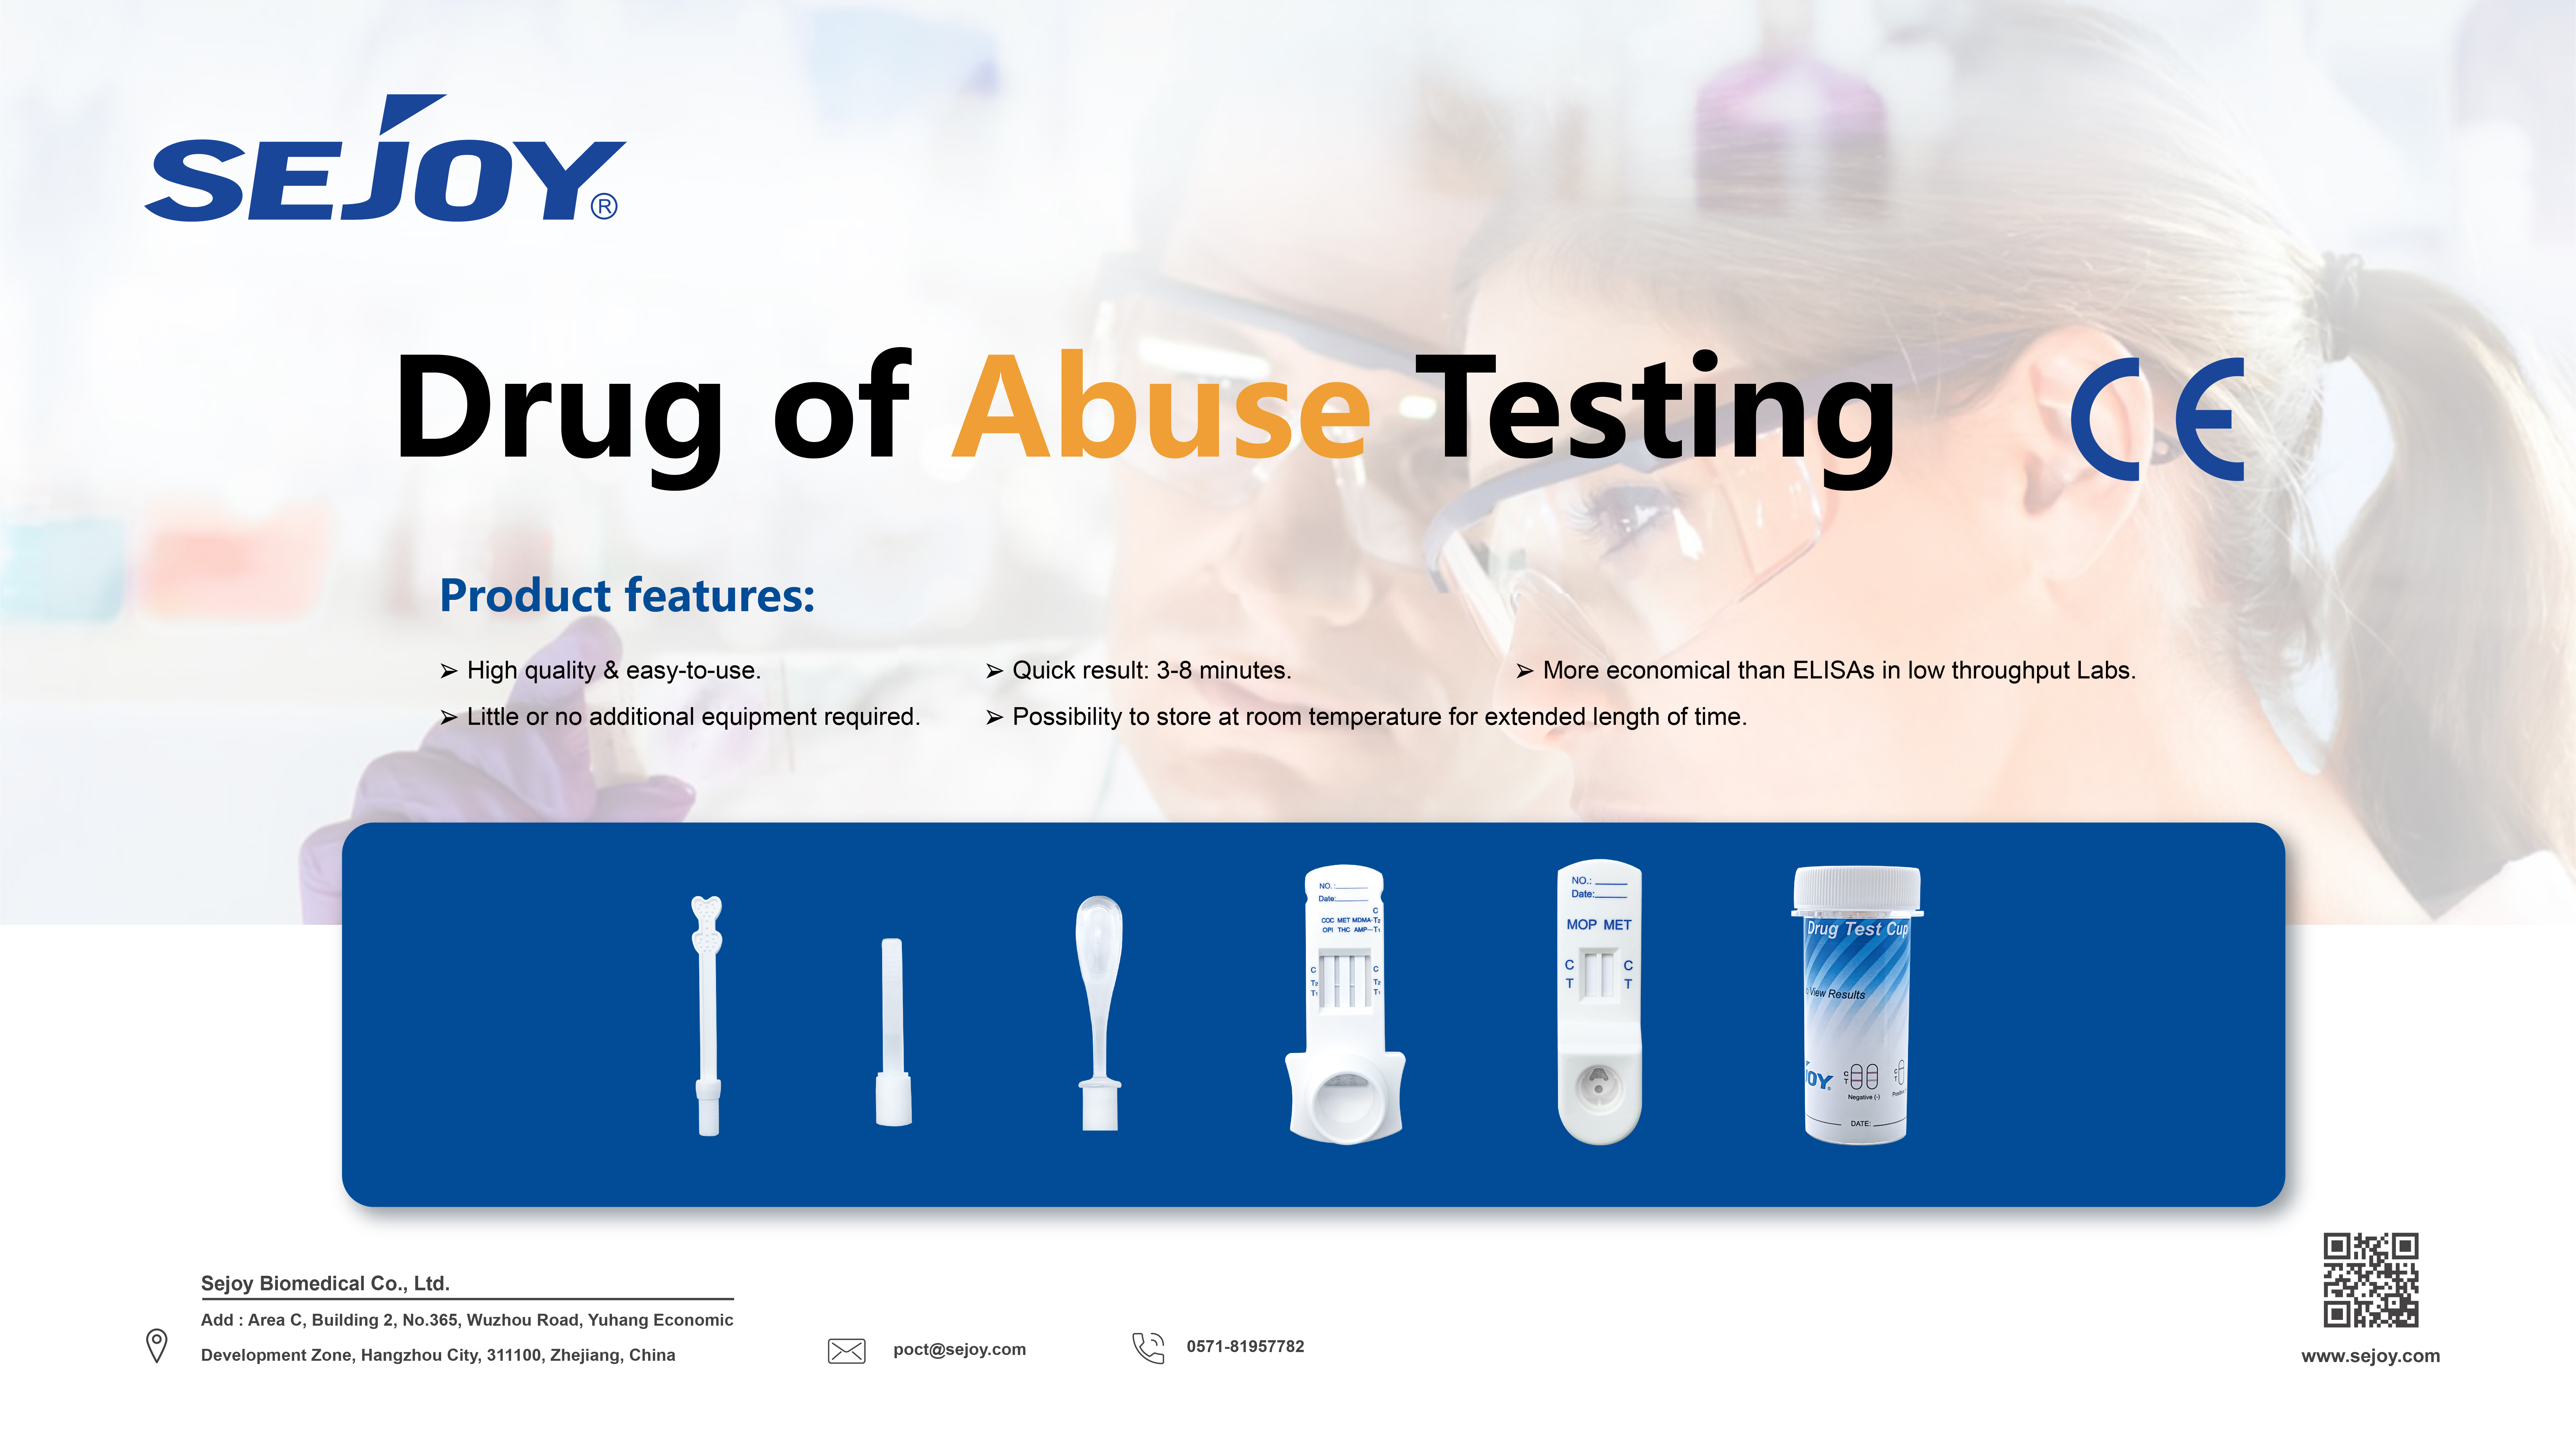 https://www.sejoy.com/drug-of-abuse-testing/